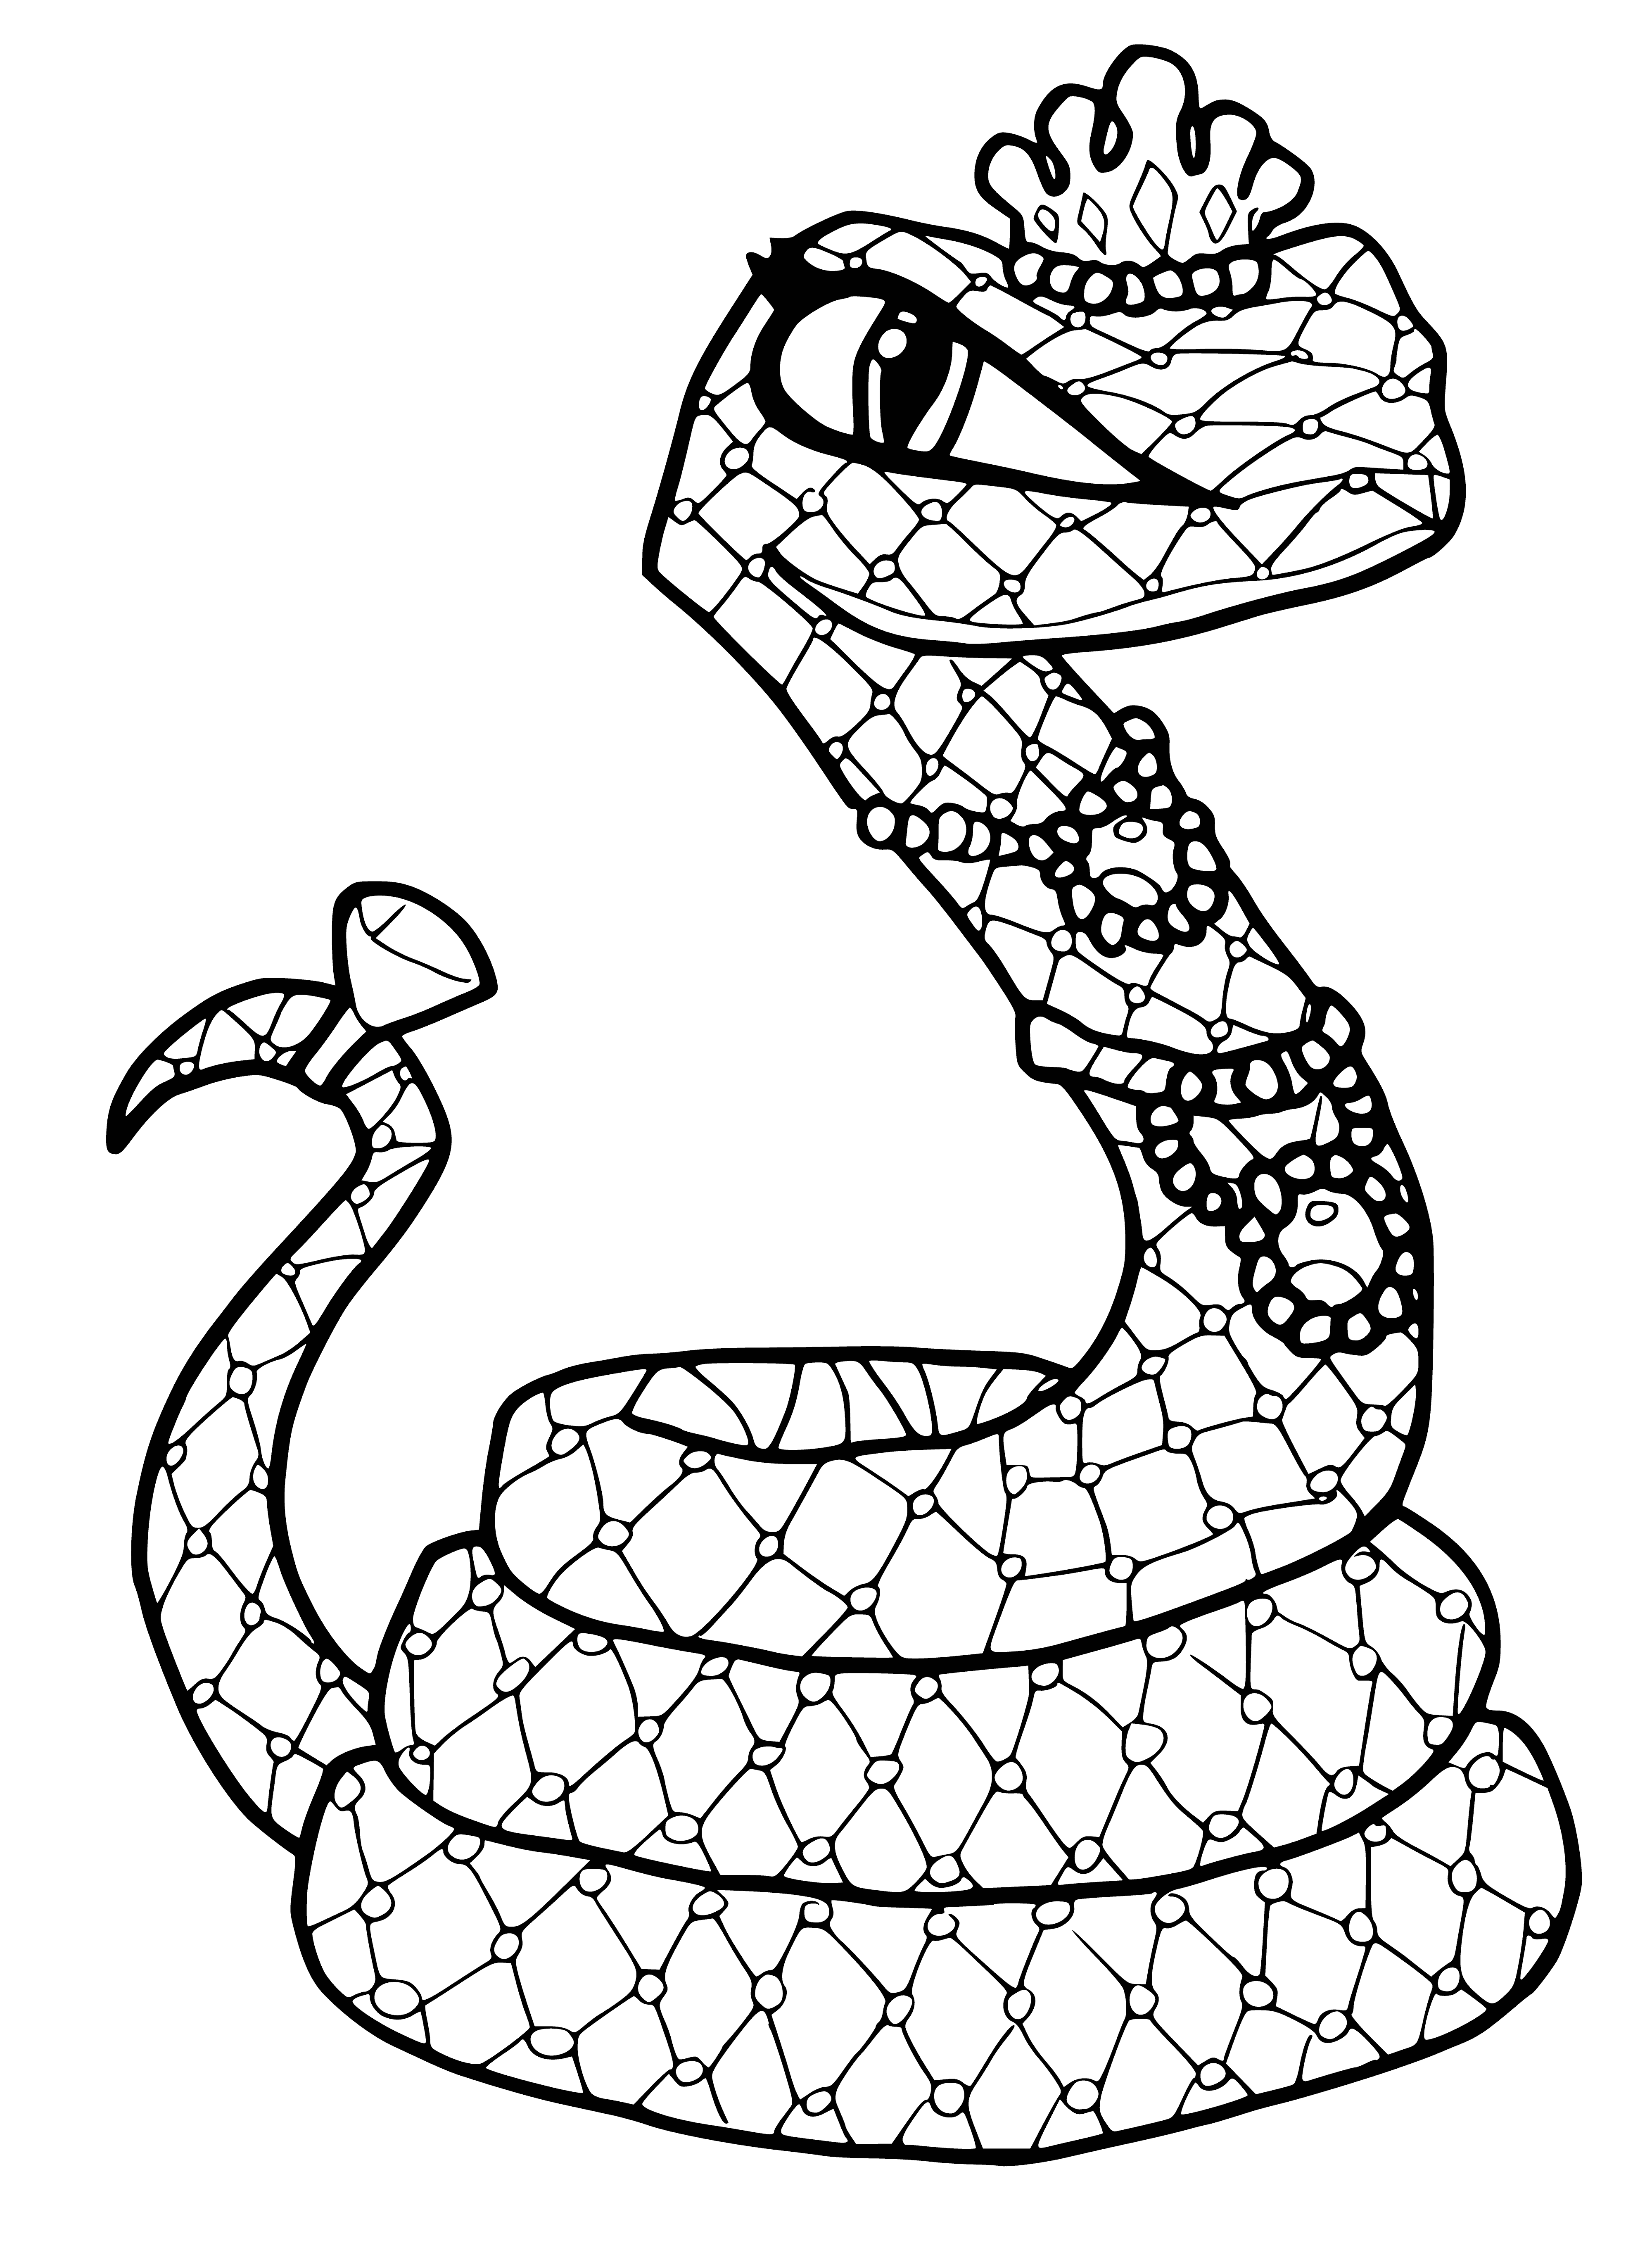 La mascota de Neil, Cleo, la serpiente de Hisset página para colorear